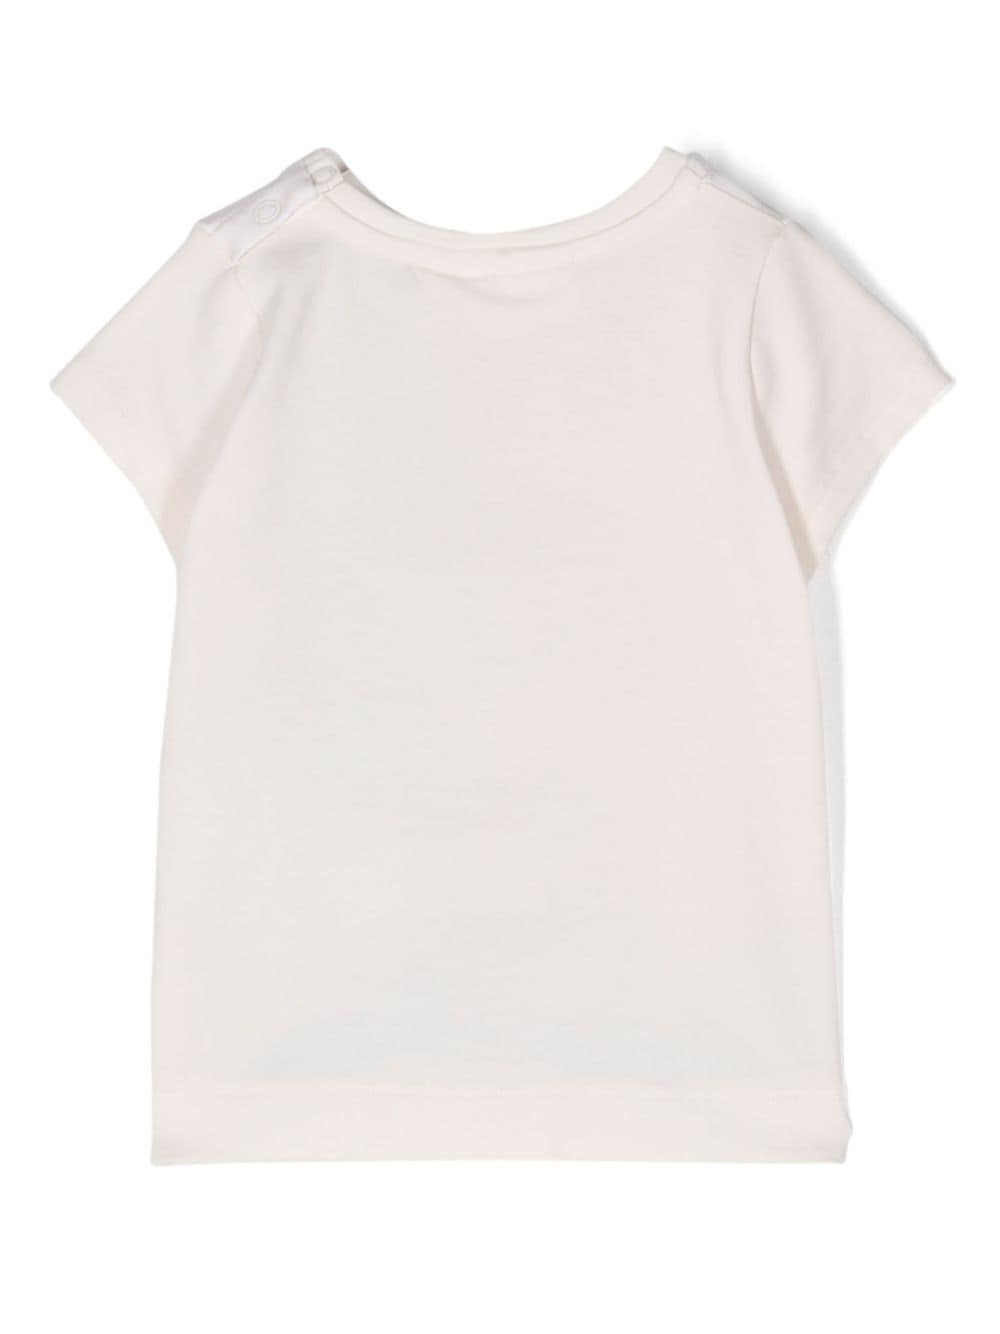 T-shirt beige/multicolore neonata